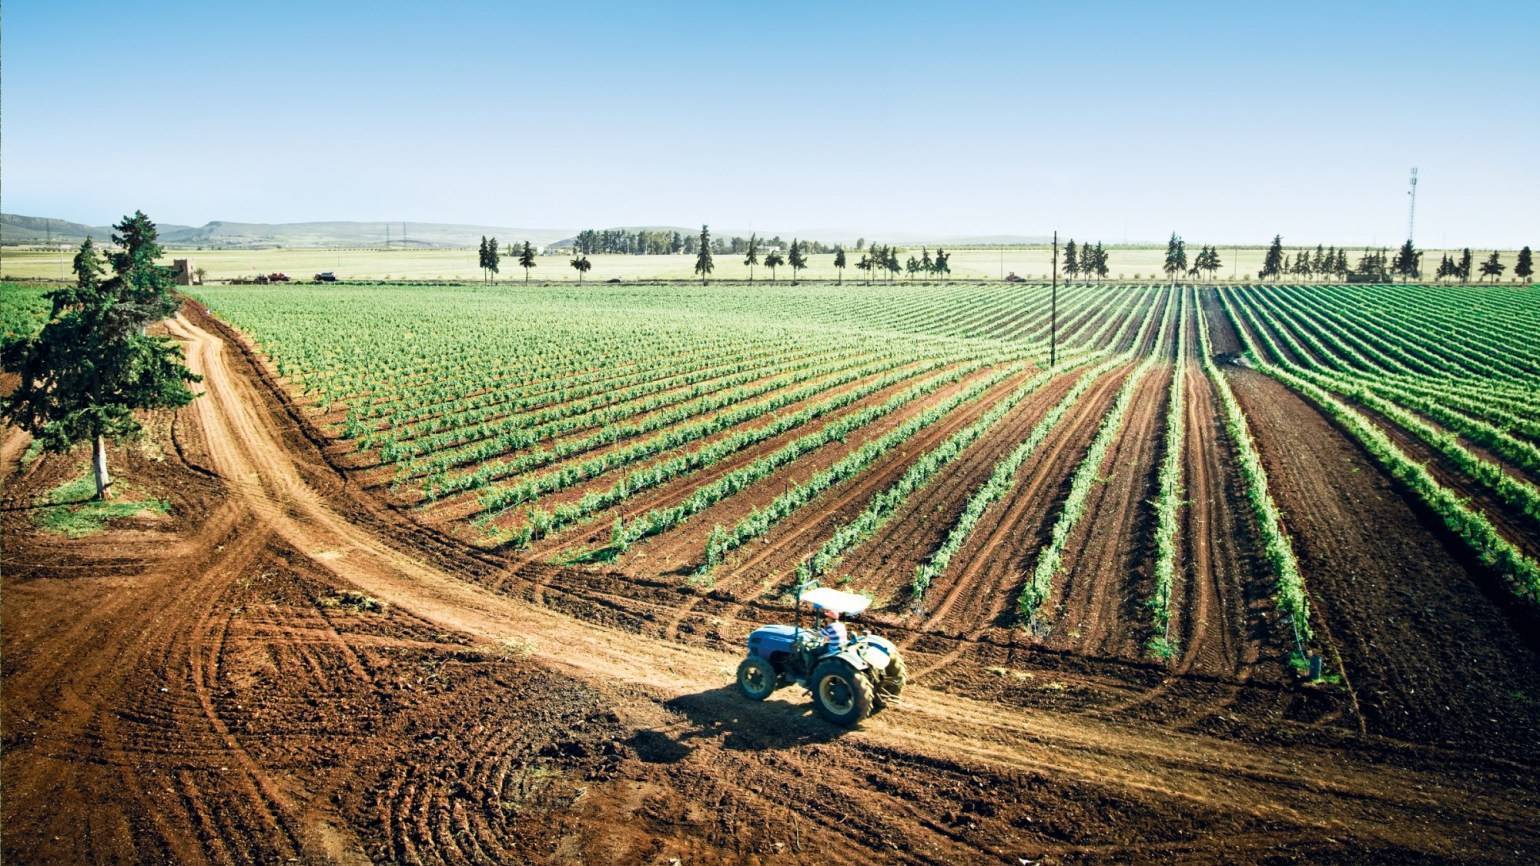 Успехи сельского хозяйства. BASF для сельского хозяйства. BASF Agricultural solutions. Сфера сельскохозяйства в Италии. Сельское хозяйство земледелие.